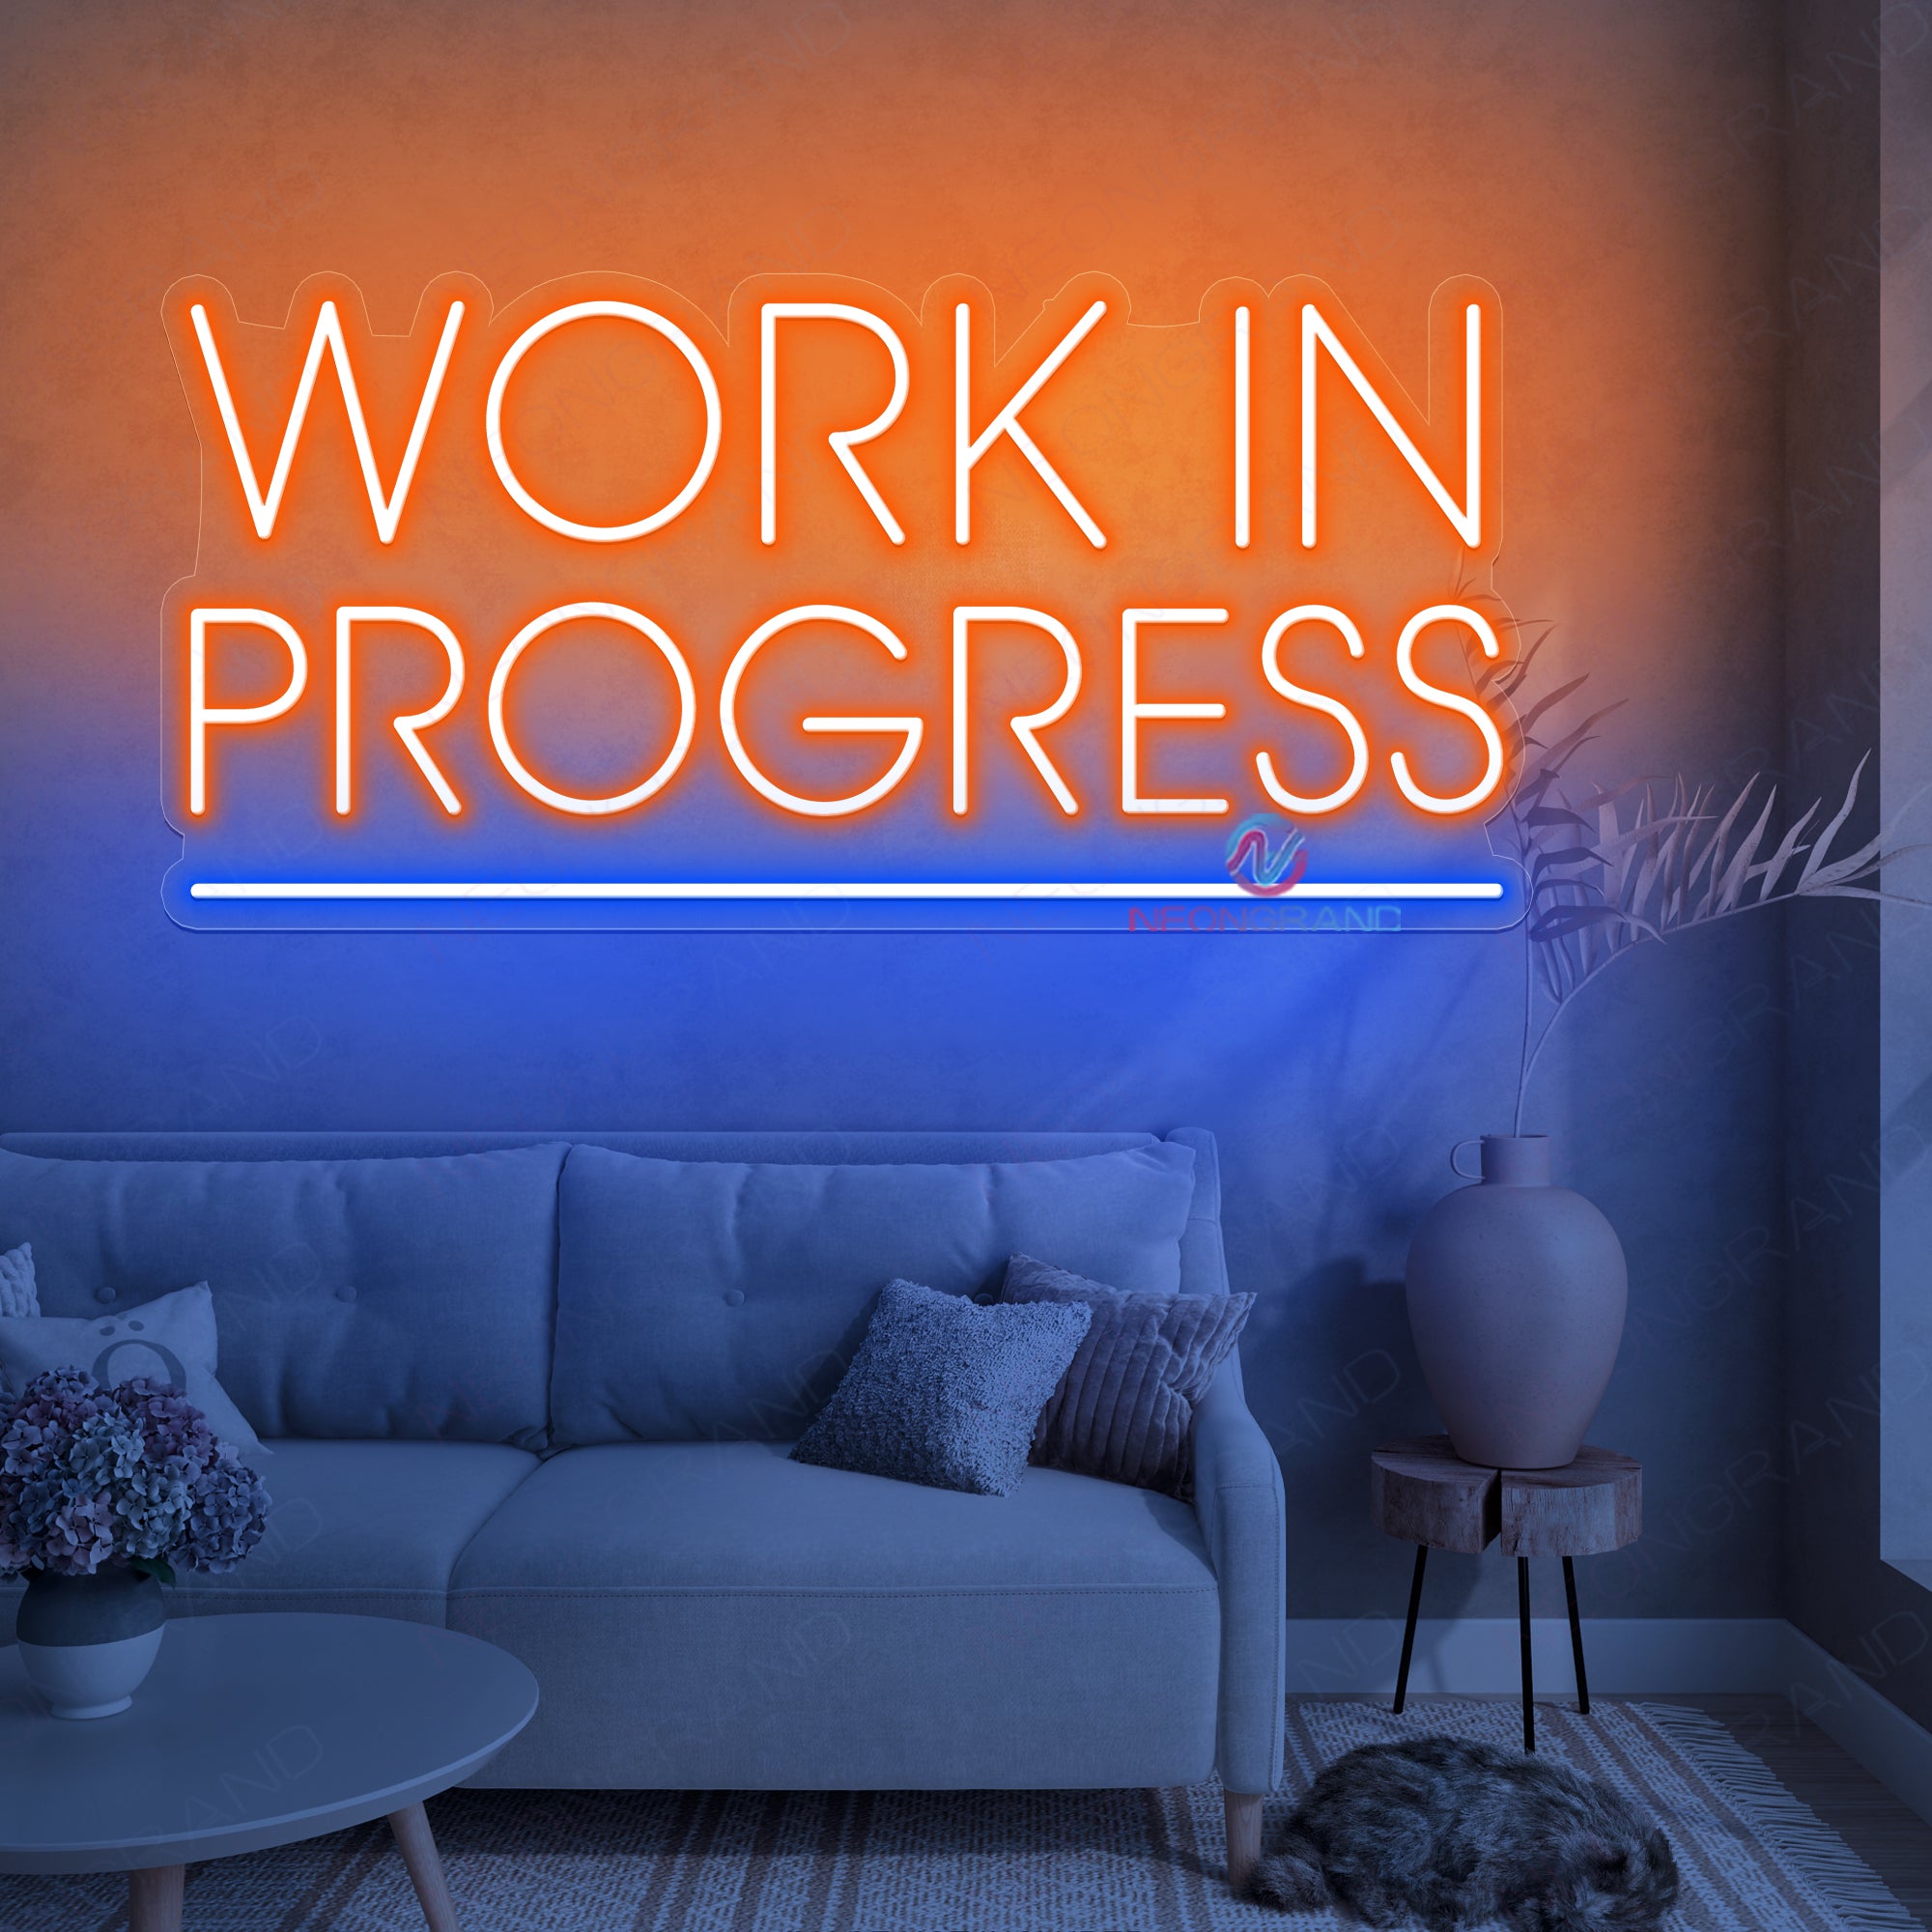 Work In Progress Neon Sign Business Led Light